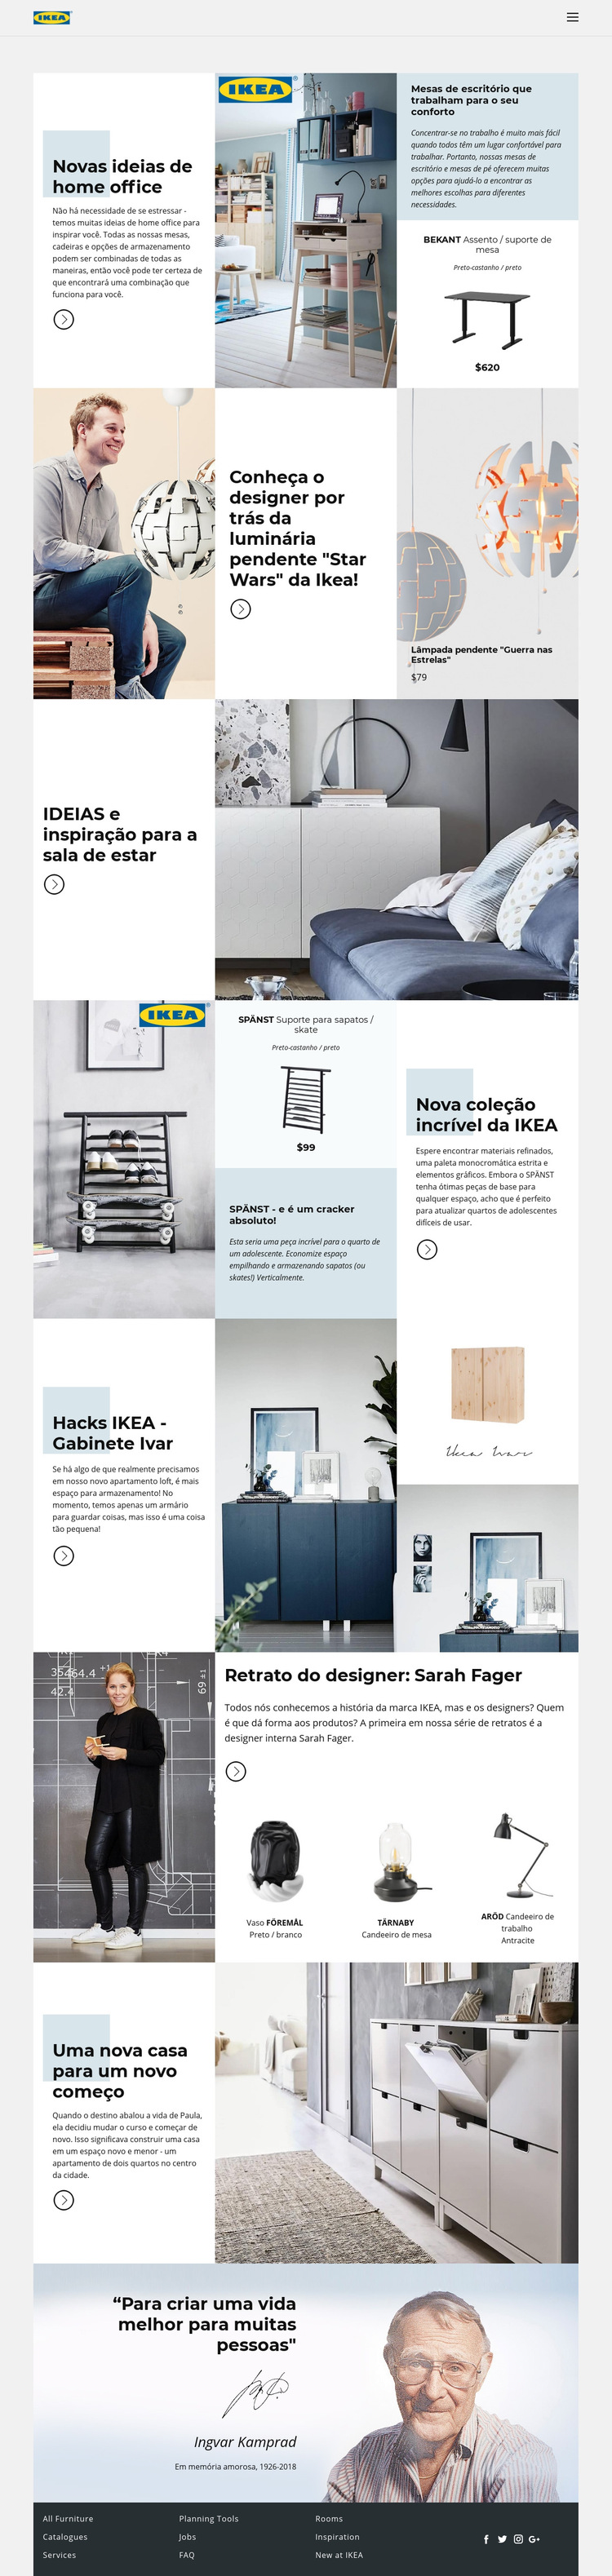 Inspiração da IKEA Modelo de site